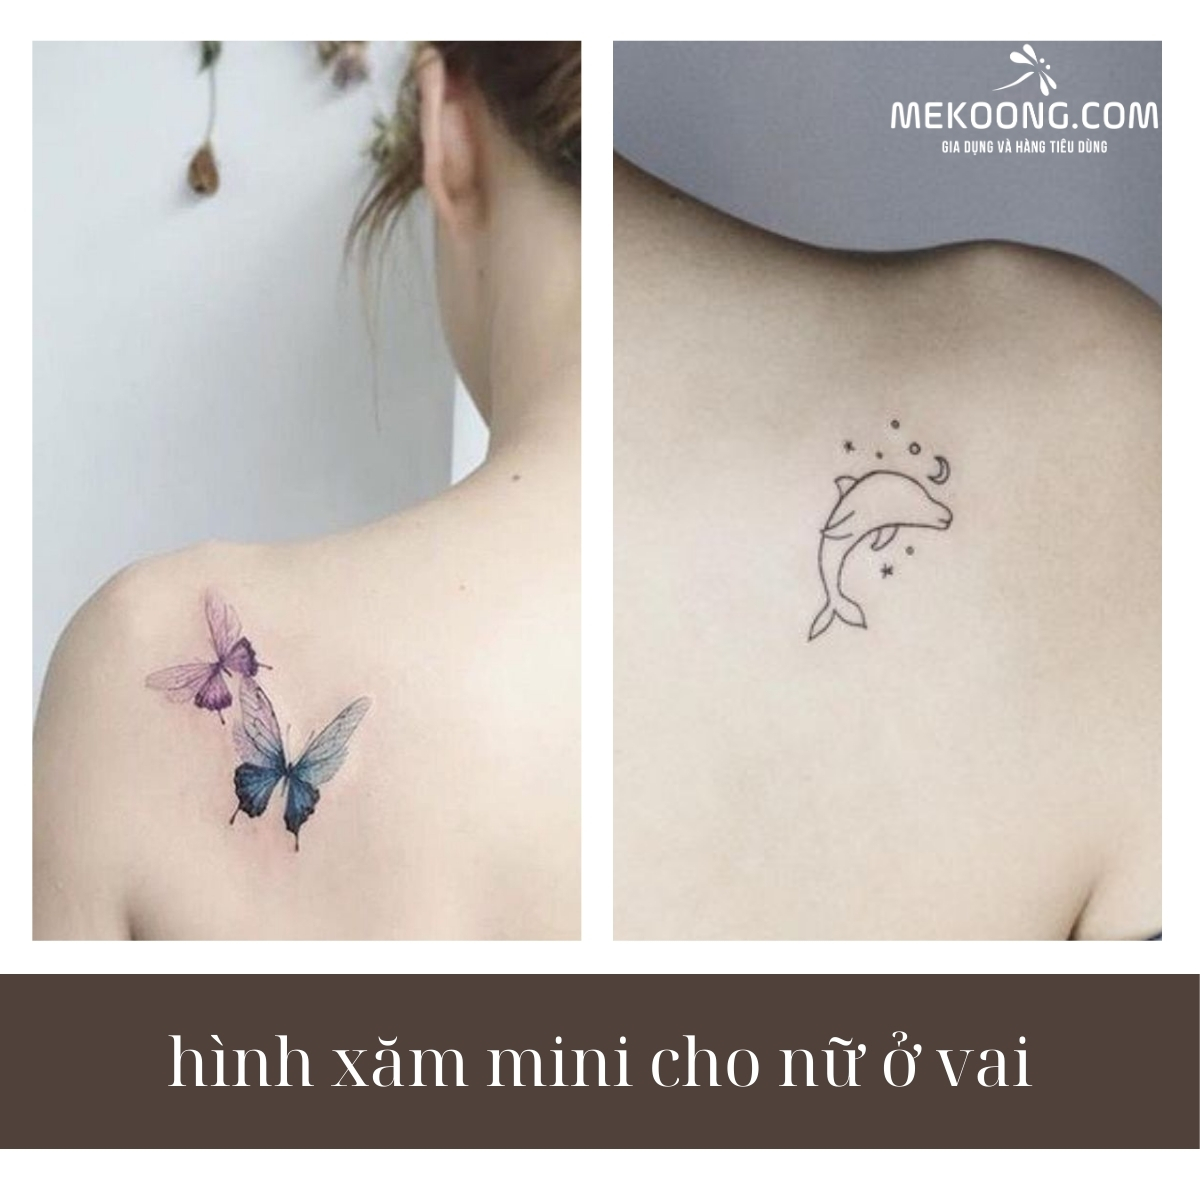 Drawing Beautiful Butterfly Tattoo, Vẽ hình xăm nhỏ đẹp - YouTube